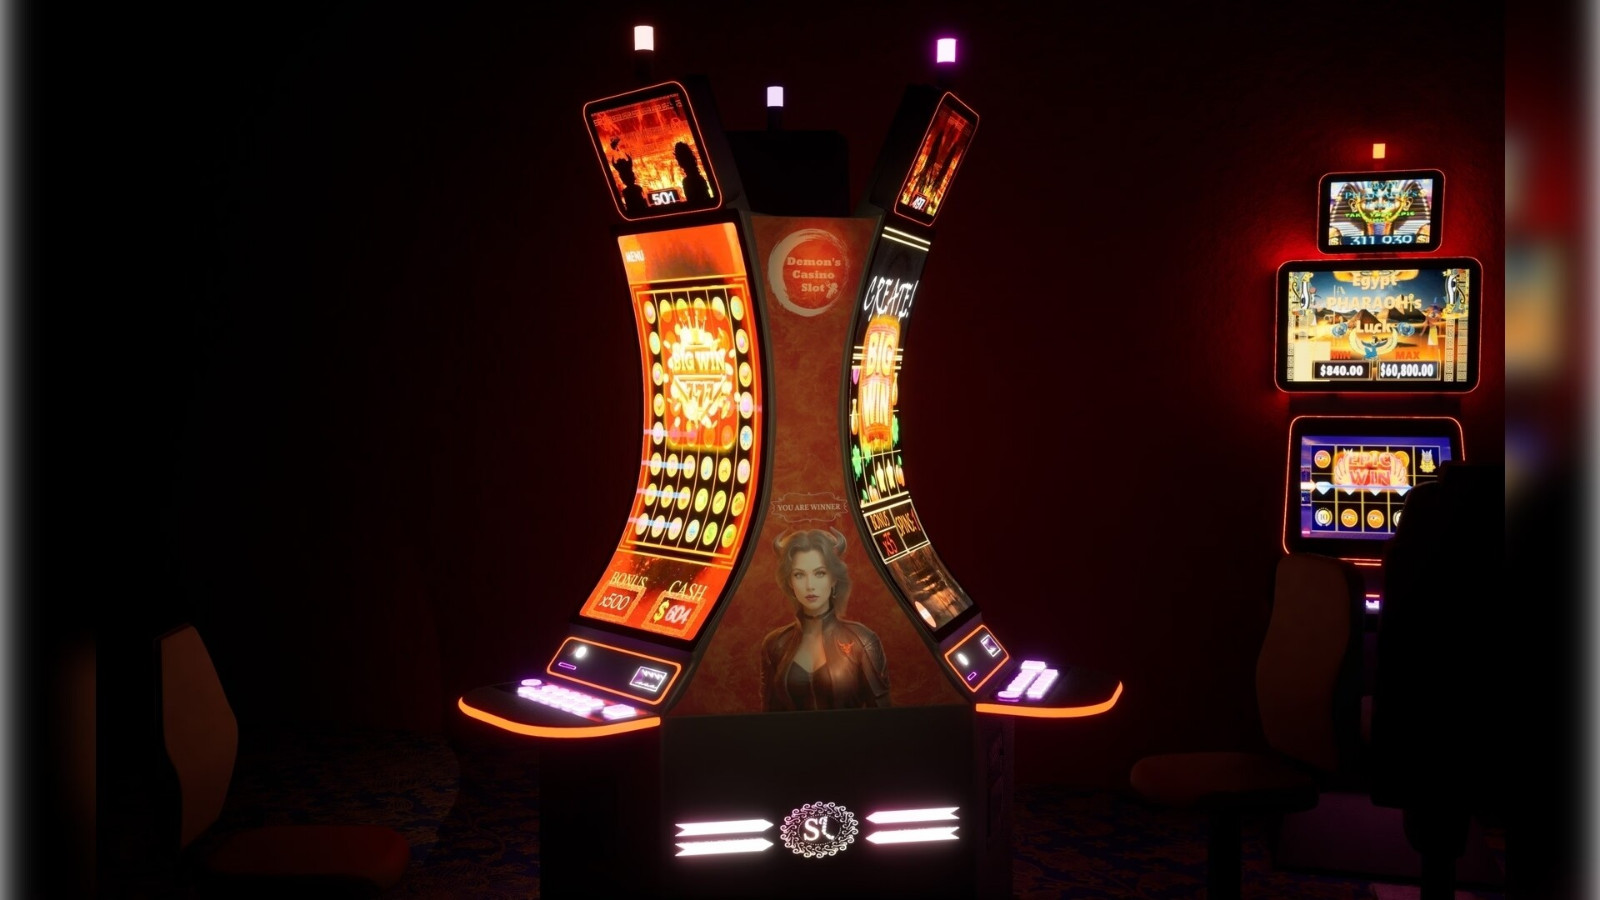 《赌场模拟器》Steam页面上线 第二季度发售